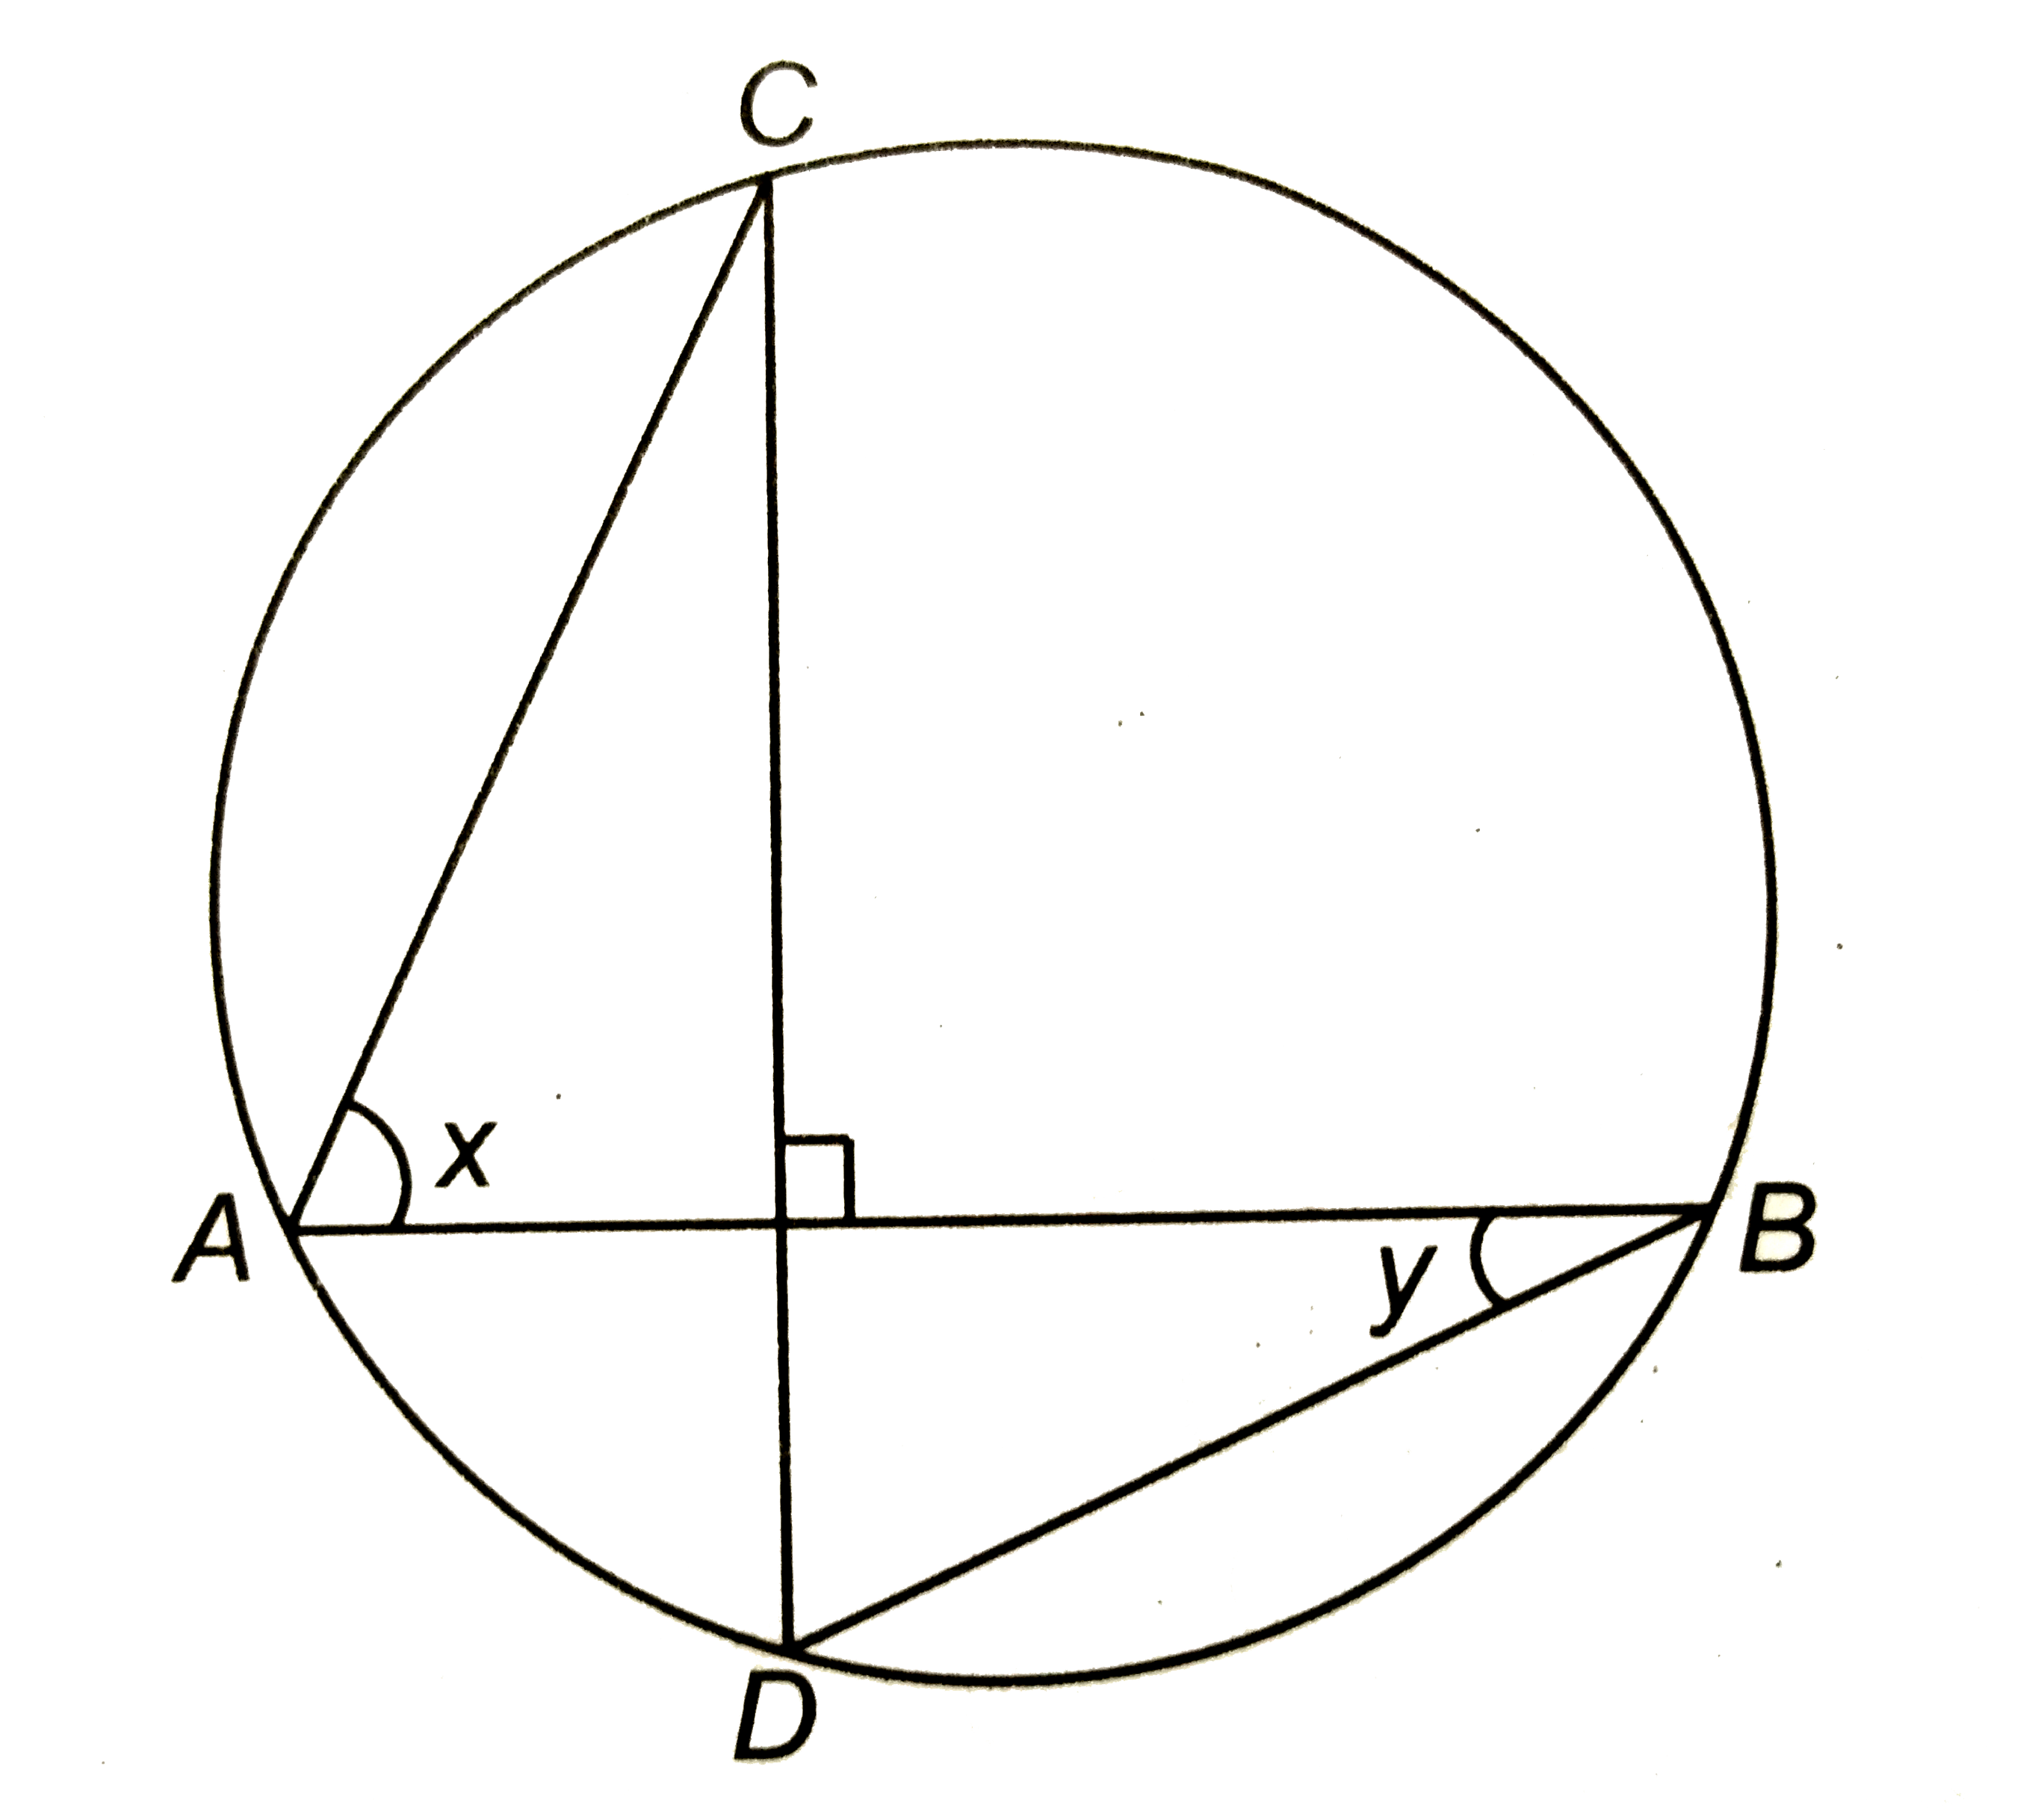 संलग्न चित्र में, यदि वृत्त की जीवायें AB और CD एक-दूसरे को समकोण पर कटती हैं, तो x+y का मान ज्ञात कीजिए |